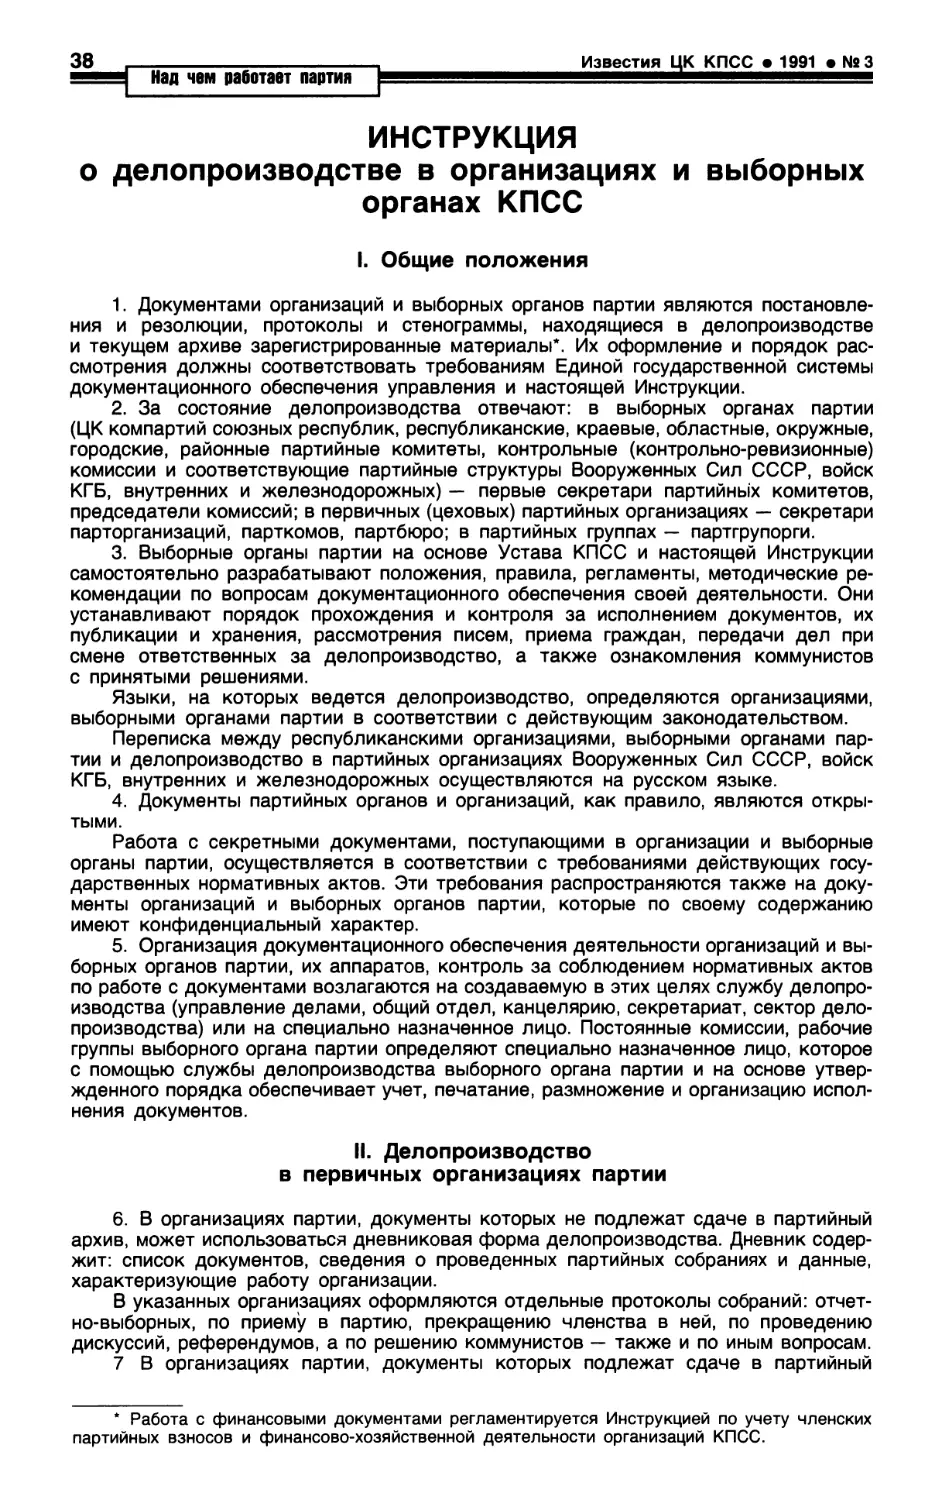 Инструкция о делопроизводстве в организациях и выборных органах КПСС